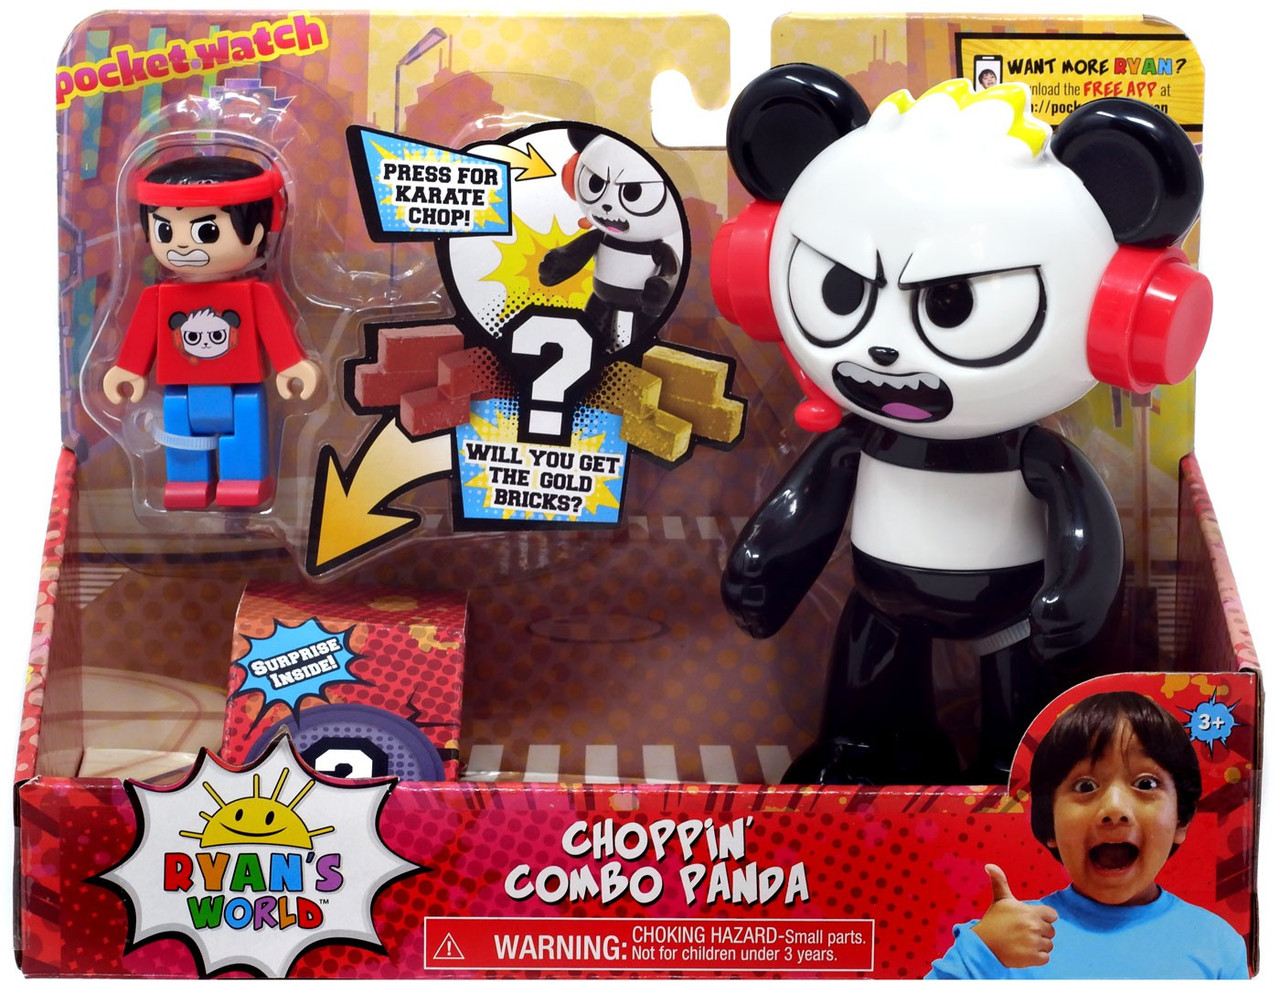 Ryans World Choppin Combo Panda Figure Set Pocket Watch Toywiz - ryans world roblox toys